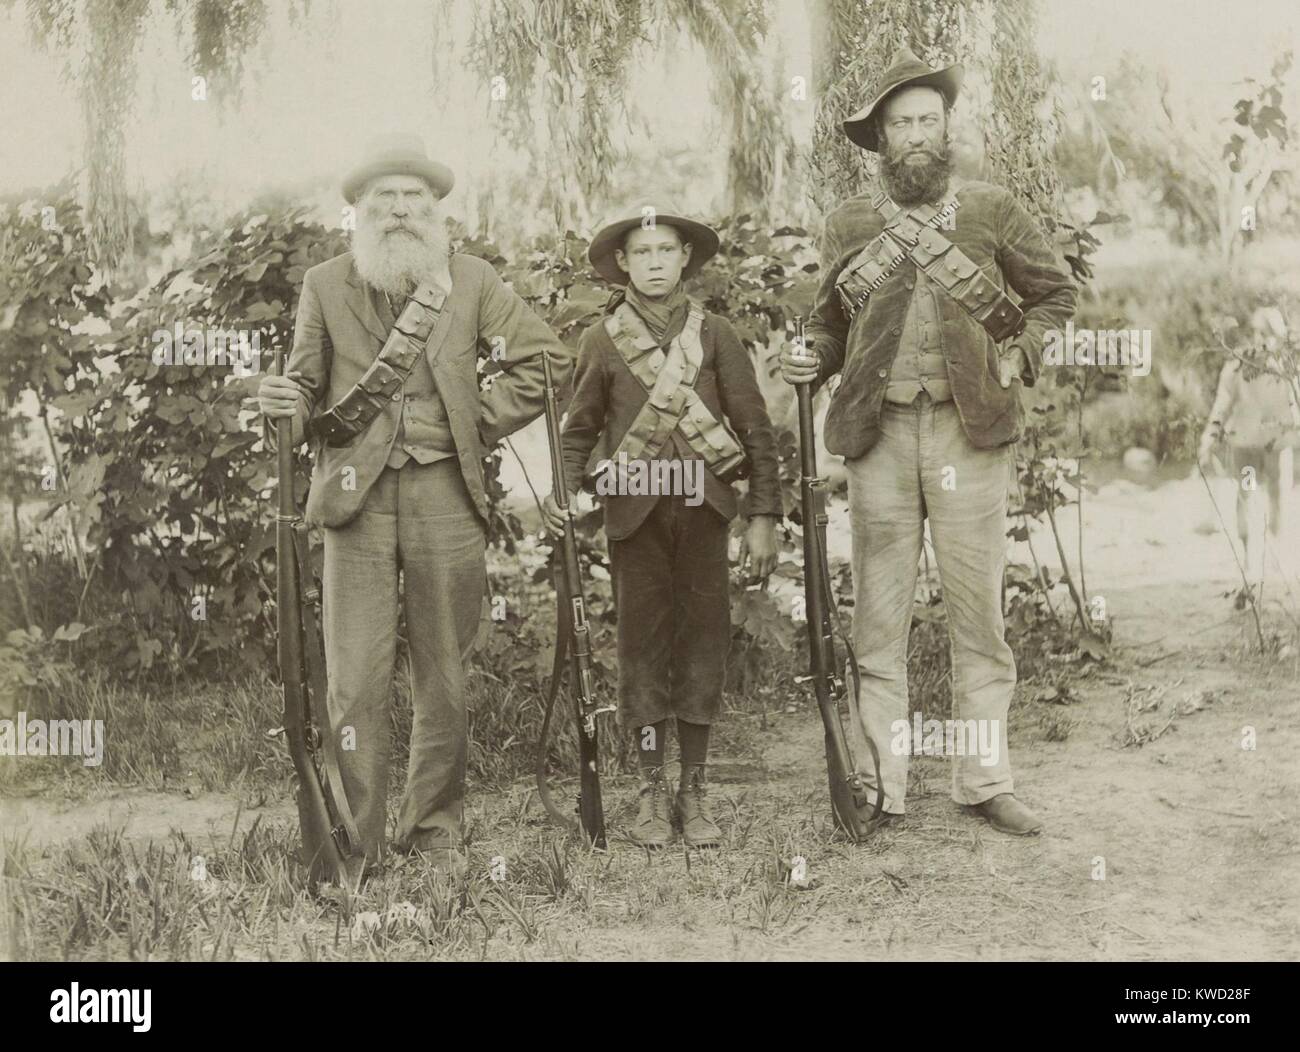 Tres generaciones de Boer combatientes contra los británicos en la guerra de los Boer, 1900. L-R: P.J Lemmer, de 65 años de edad; J.D.L. Botha, de 15 años de edad; G.J. Pretorius, la edad de 43 años. Los Afrikaners vestida y luchó en su ropa civil y material mínimo (BSLOC 2017 20 45) Foto de stock